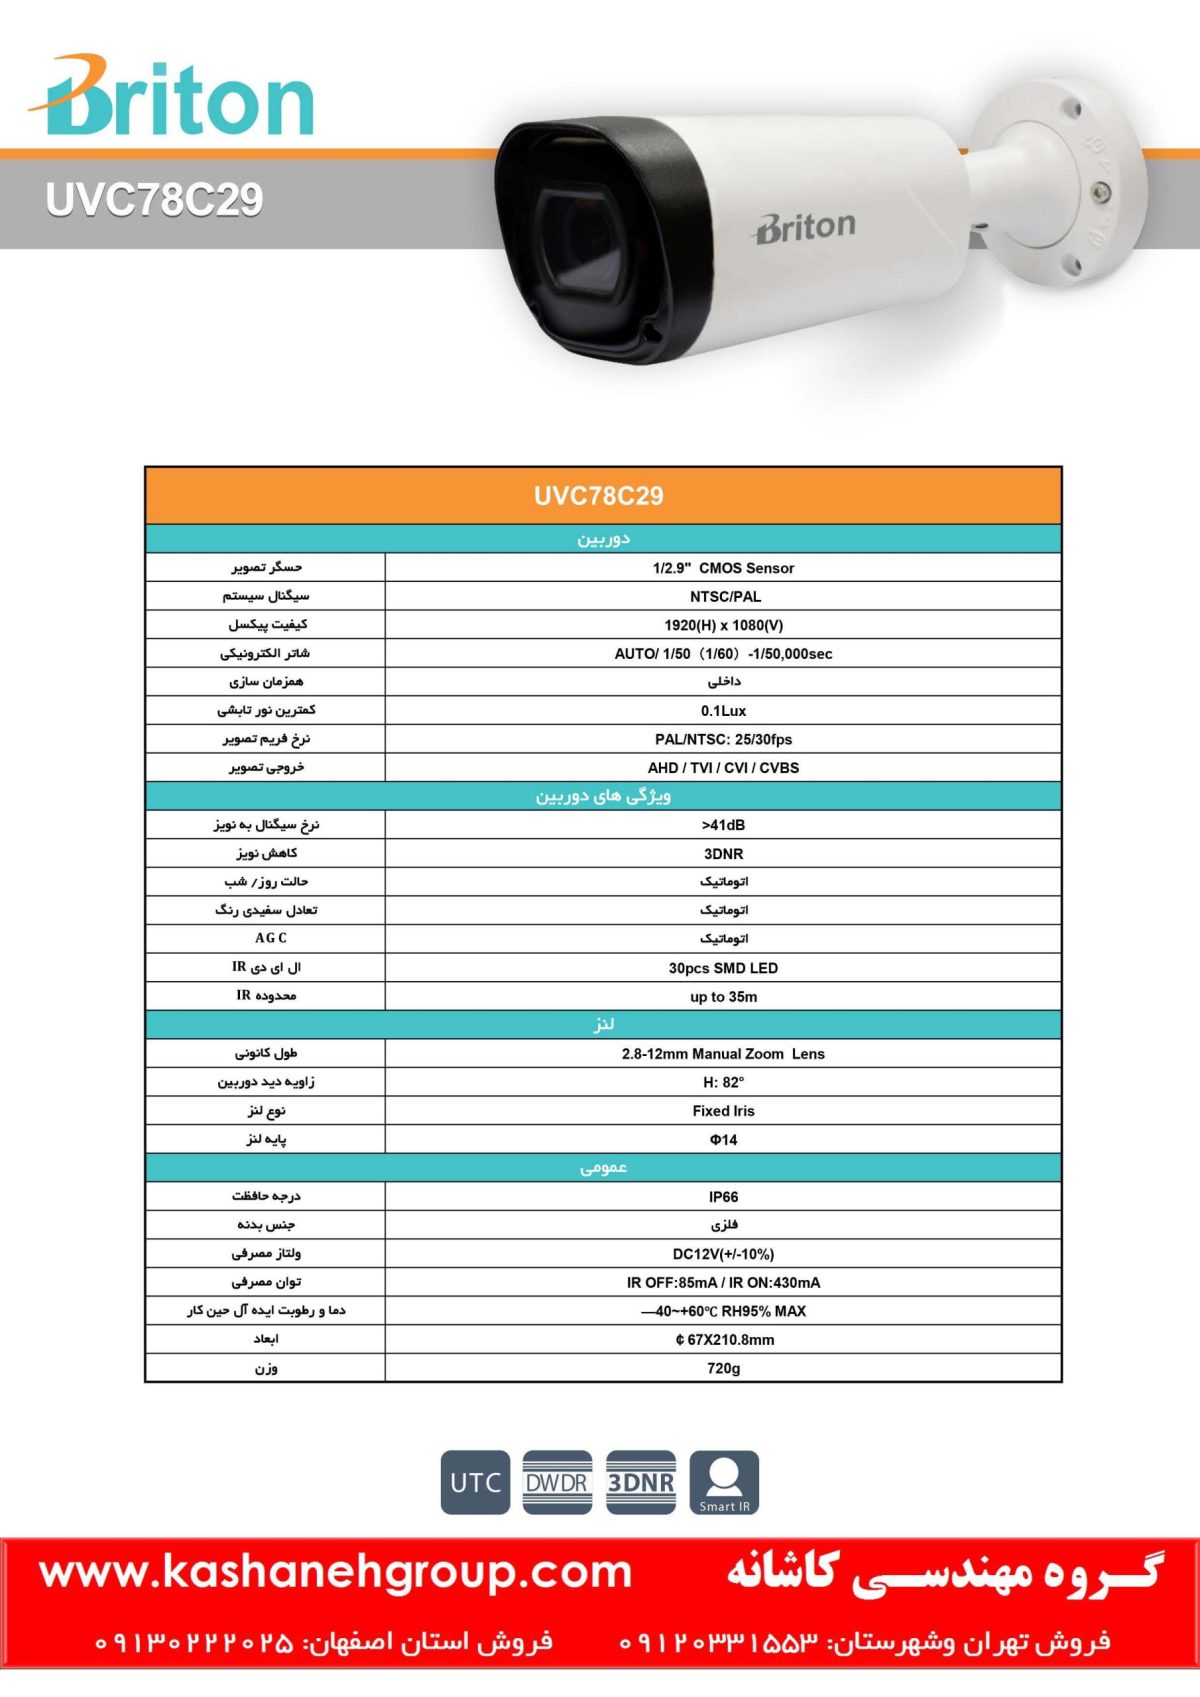 دوربین مداربسته UVC78C29، دوربین مداربسته برایتون UVC78C29، دوربین مداربسته Briton UVC78C29، دوربین برایتون UVC78C29، قیمت دوربین برایتون، نرم افزار برایتون، تعمیر دوربین برایتون، نمایندگی برایتون، نماینده برایتون، قیمت دوربین برایتون